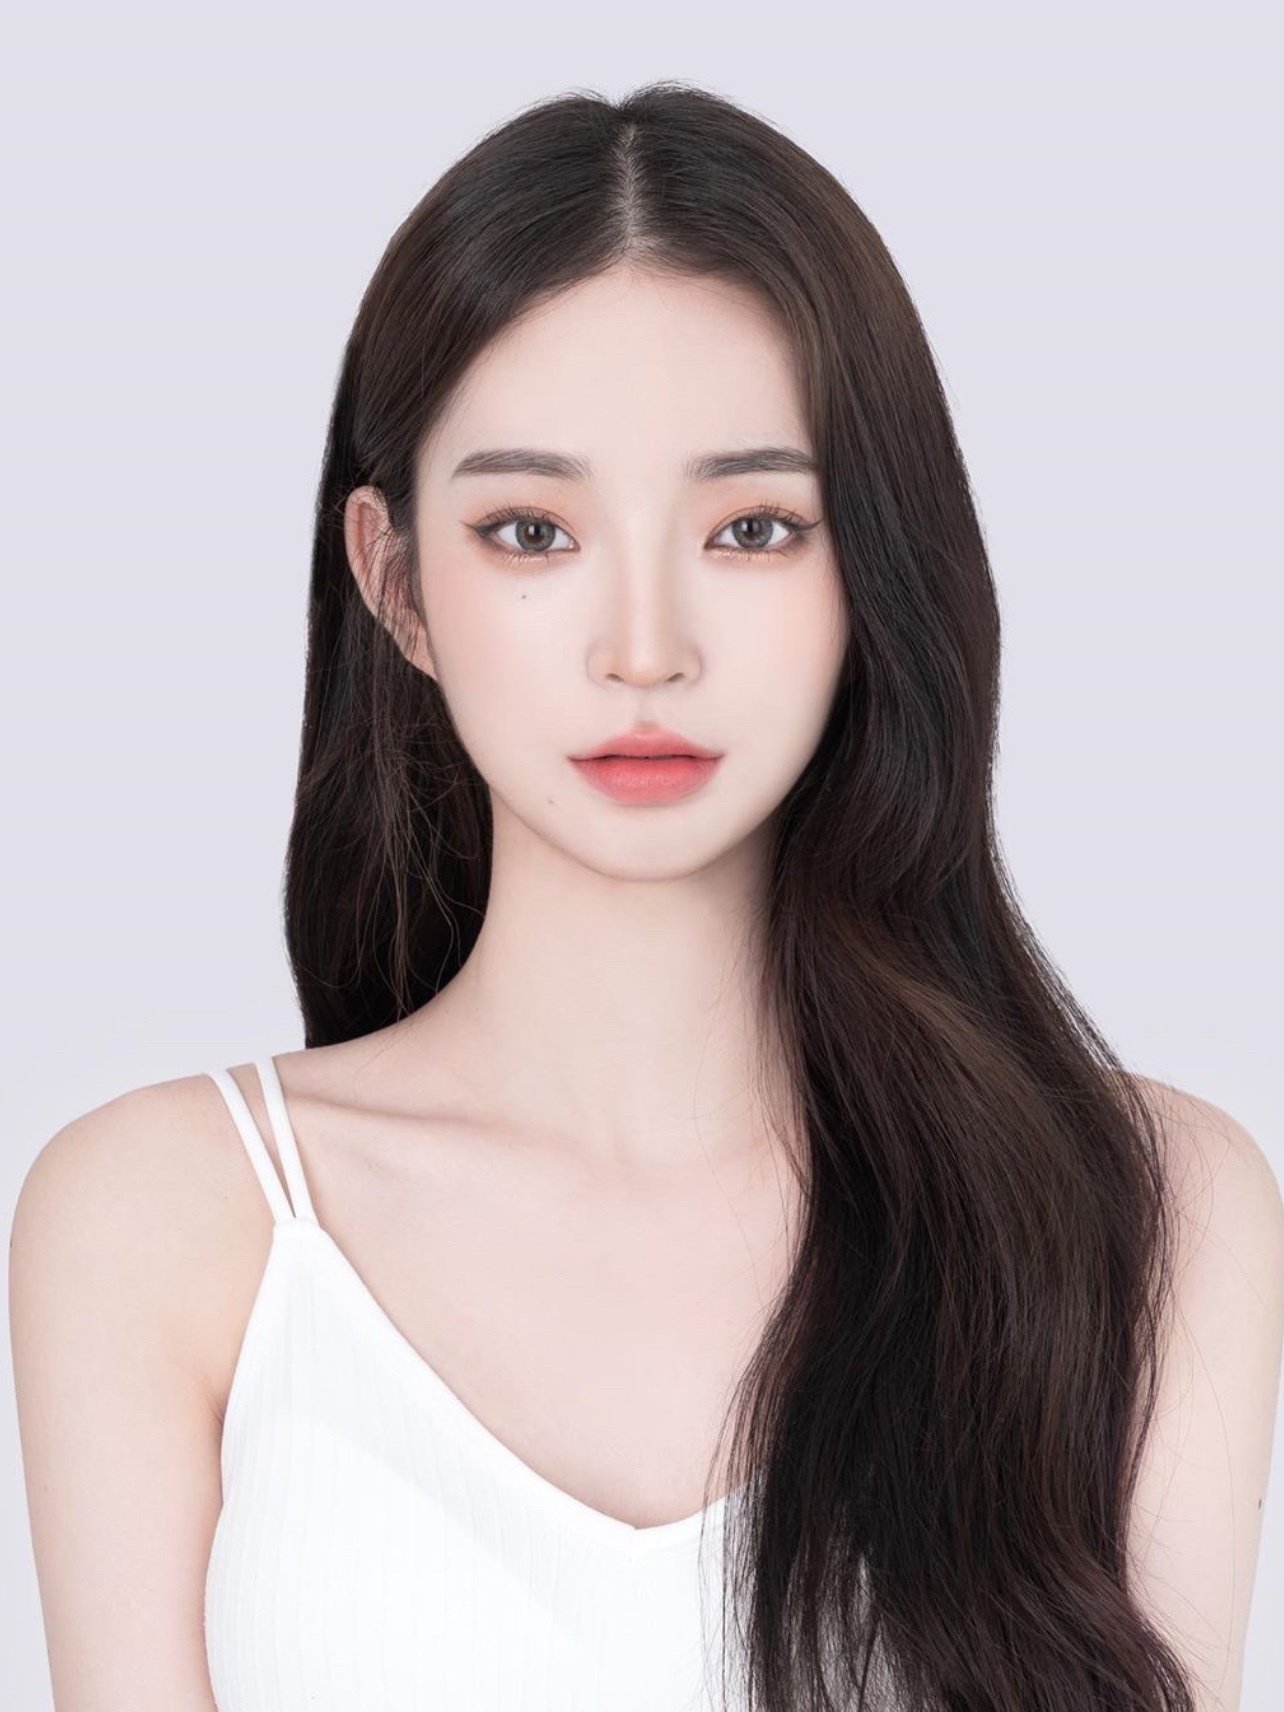 韩国脸的型和中国的脸型有么什区别?